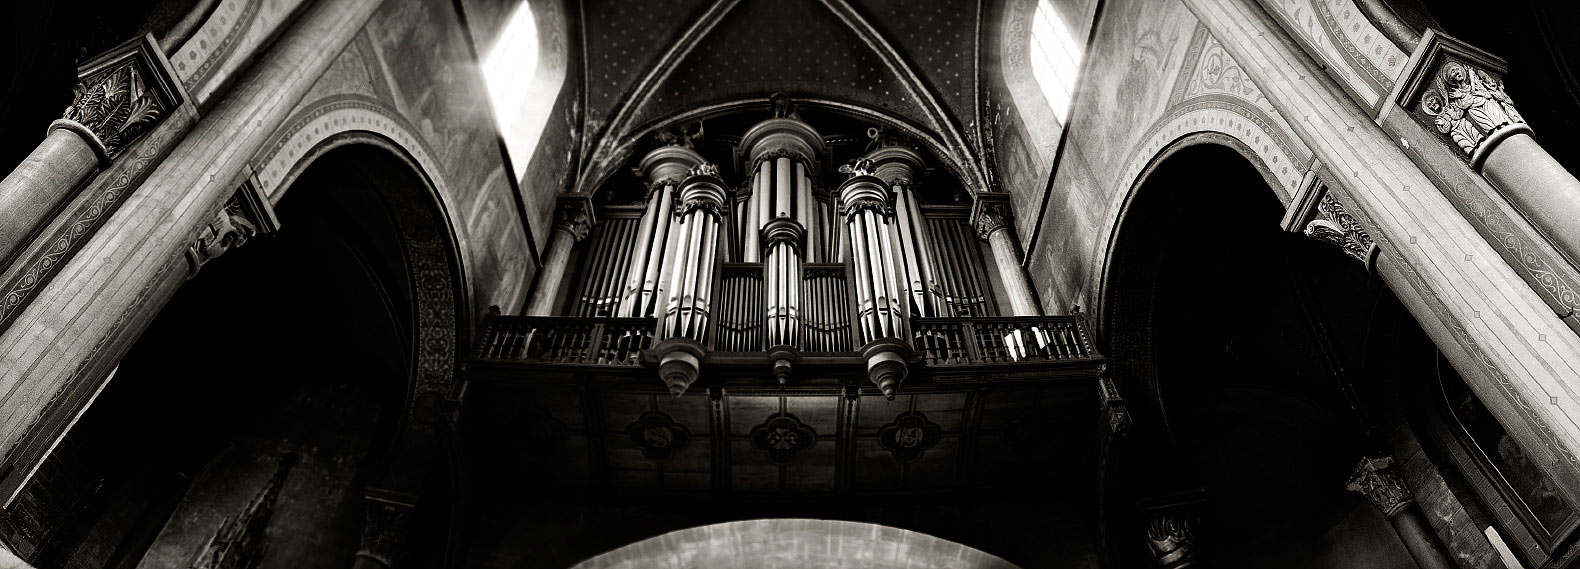 Buffet d'orgue de l'église Saint-Germain-des-Près à Paris